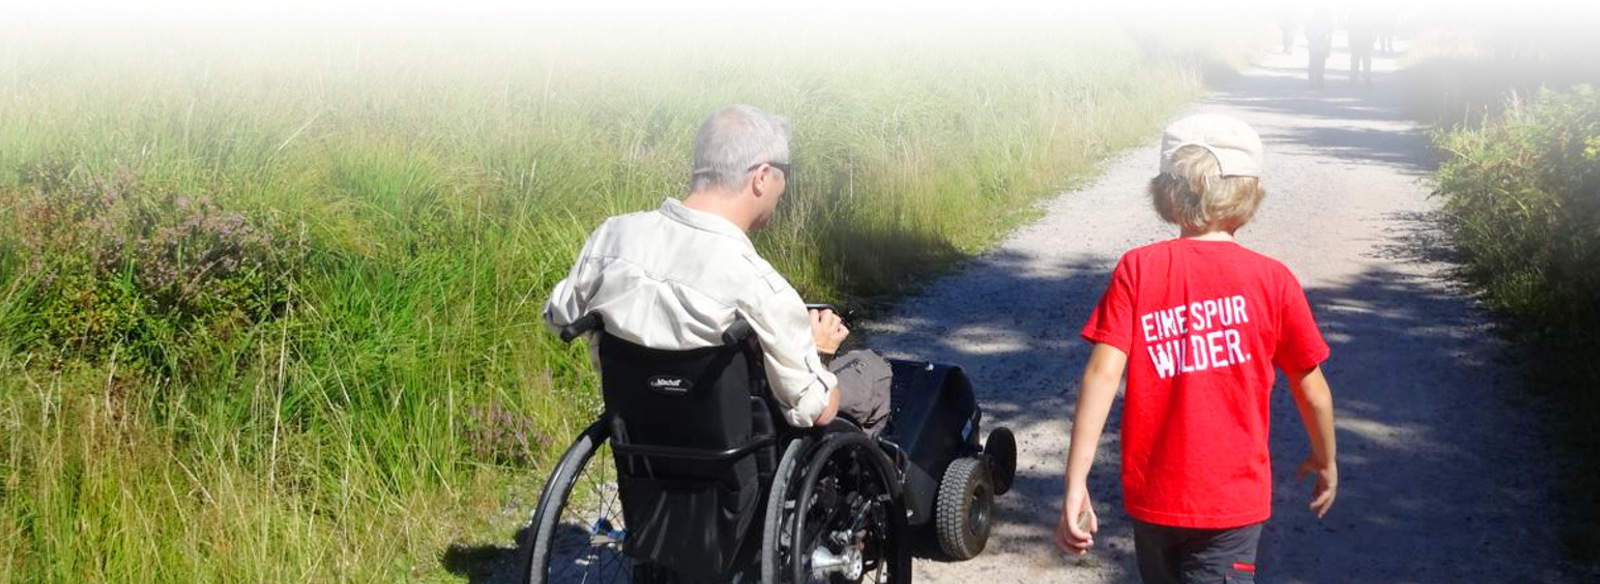 Ein Mann im Rollstuhl mit einer Zugmaschine rollt neben einem Jungen über einen geschotterten Weg.